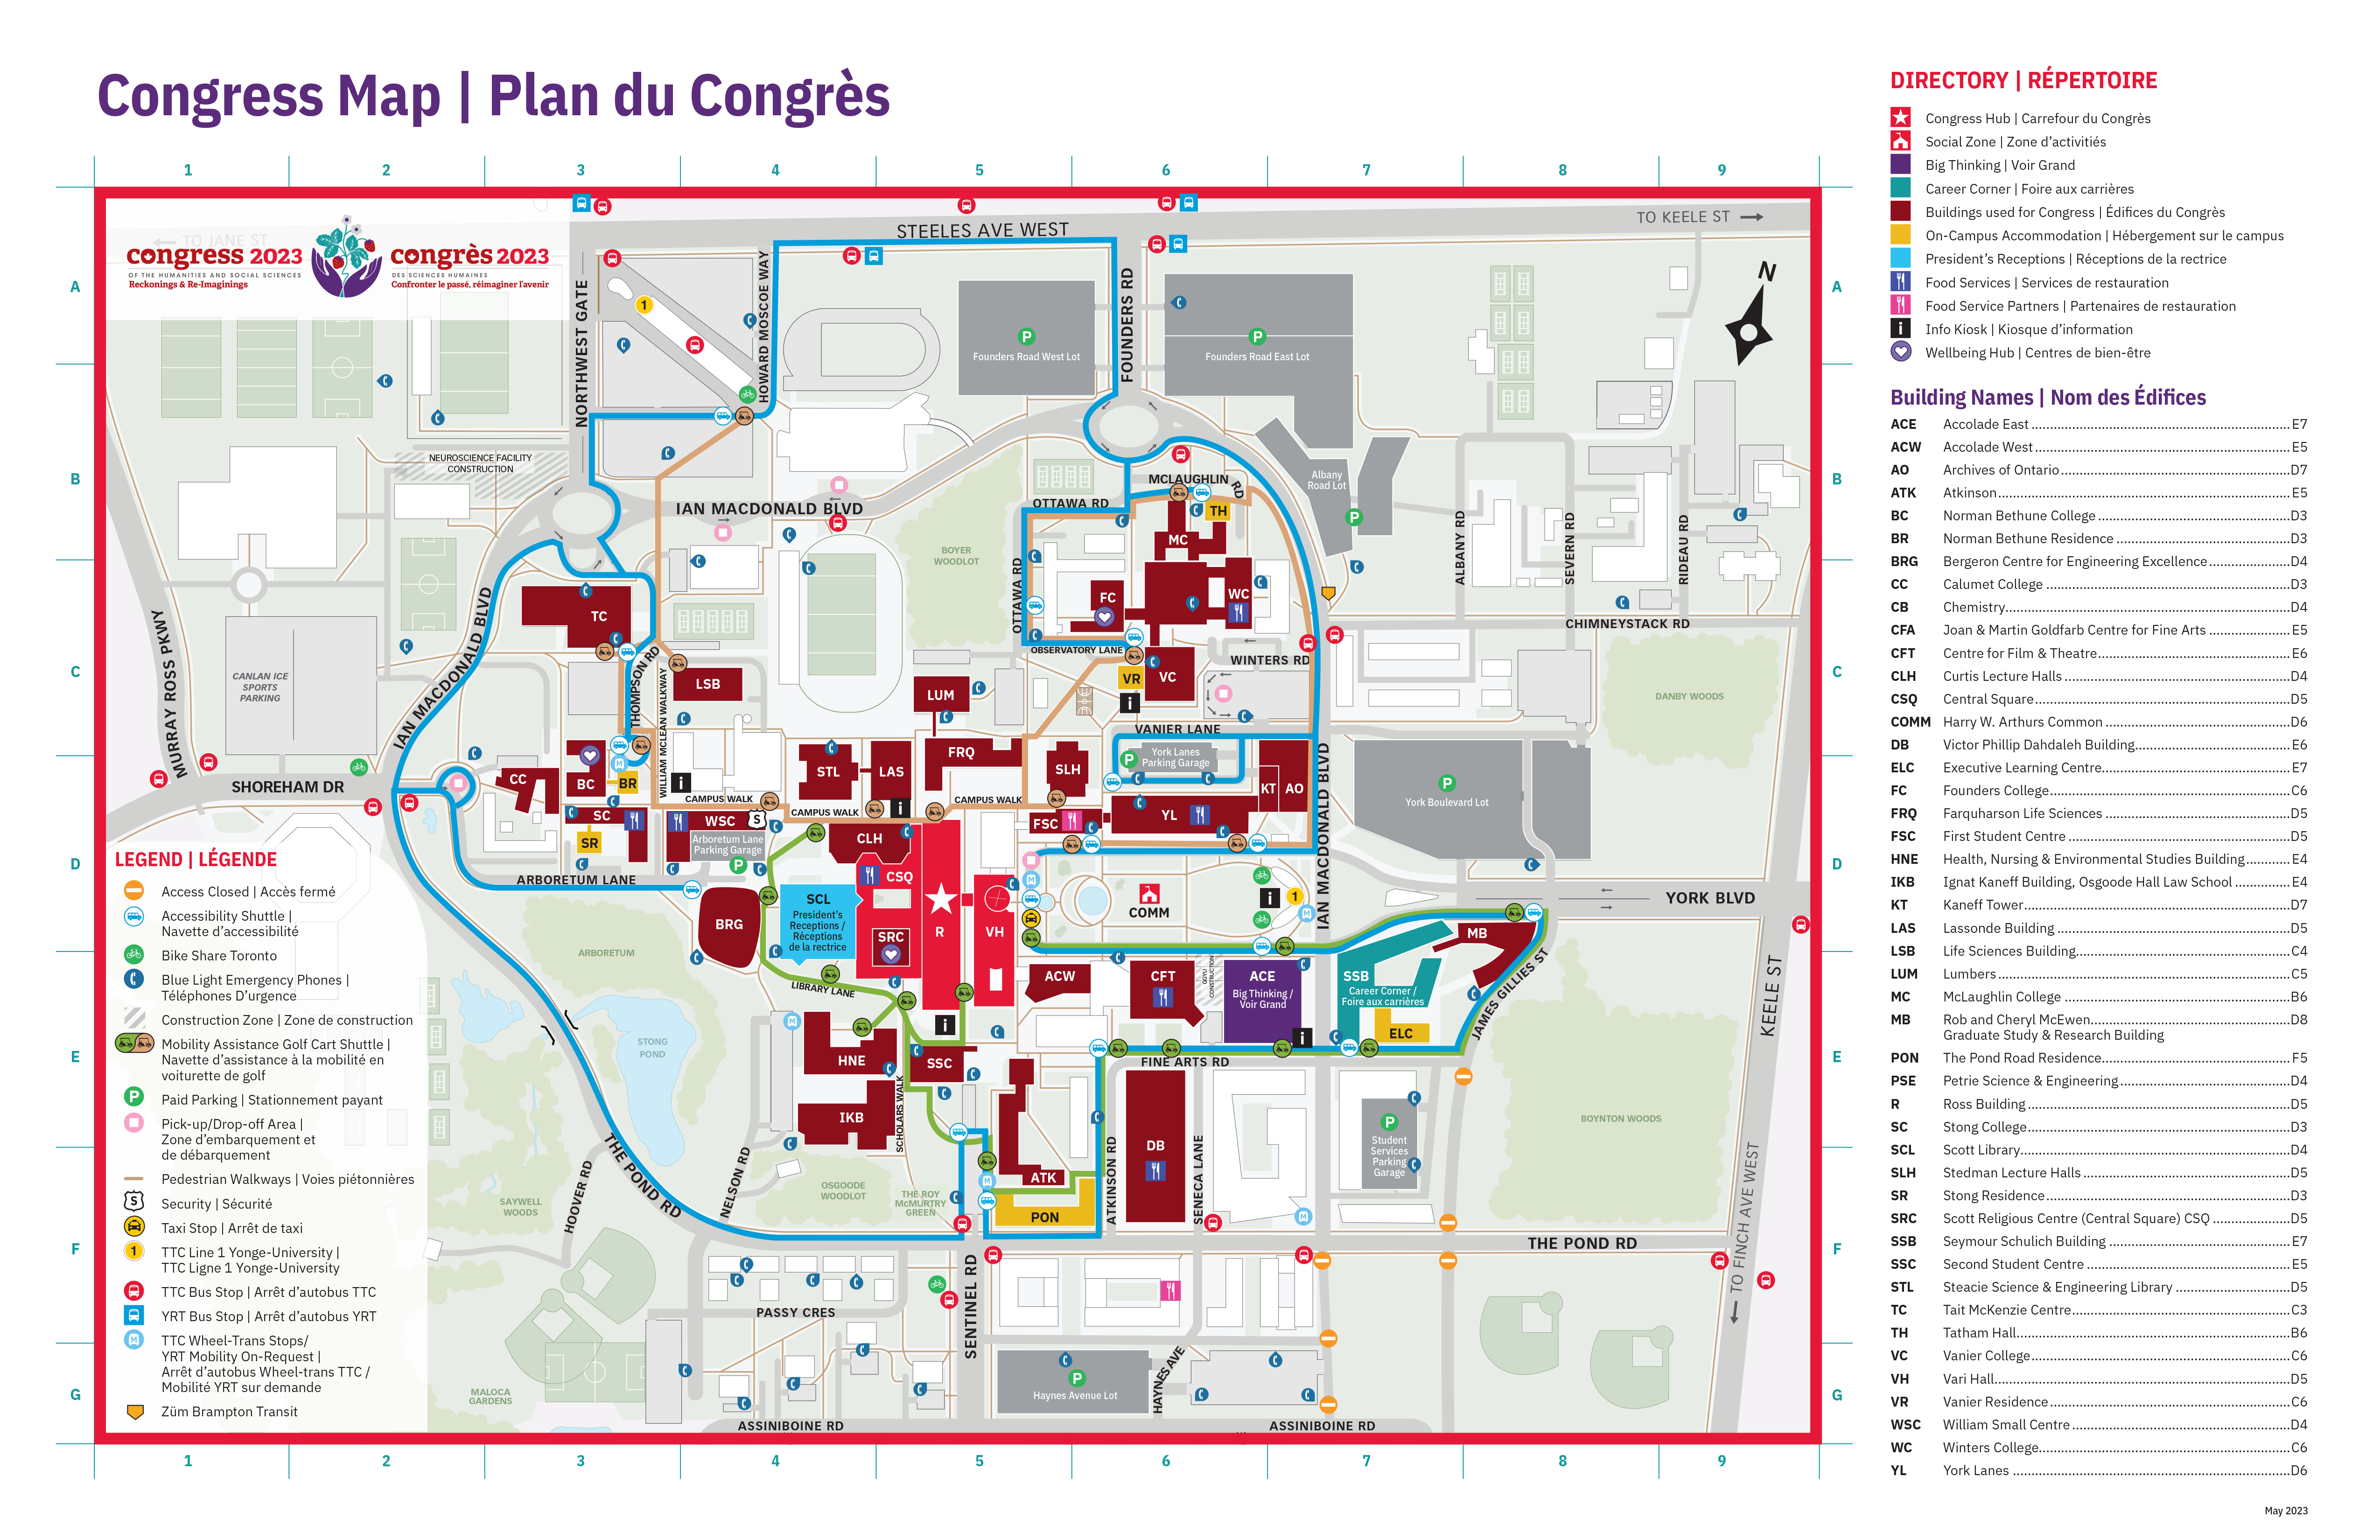 Congress campus map / Plan du campus du Congres